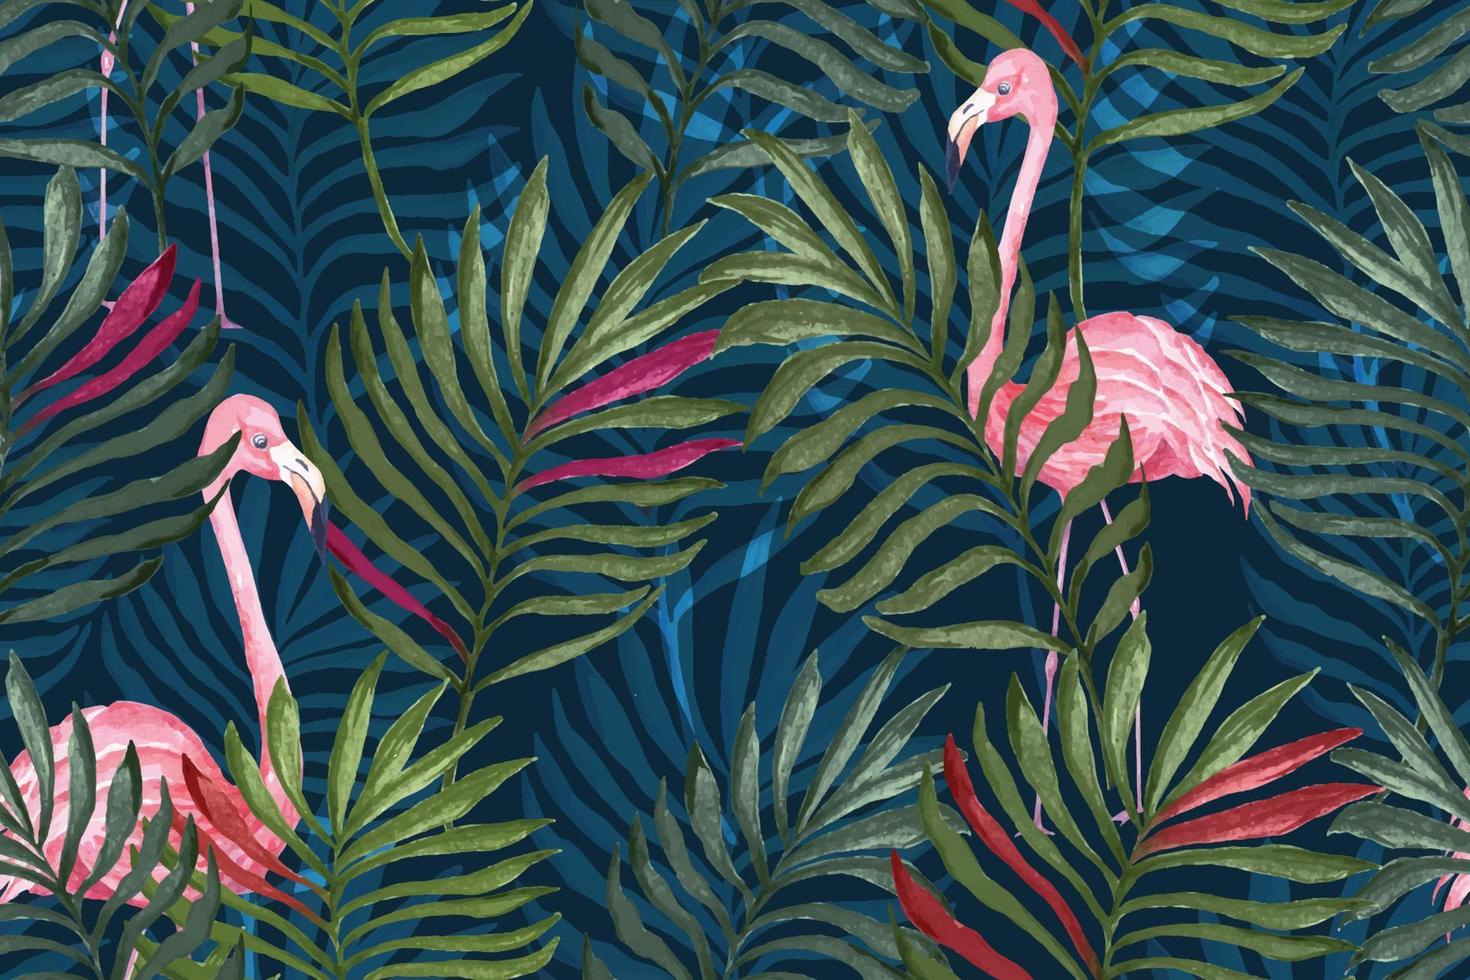 folha de palmeira padrão e flamingo para tecido e fundo de botânica wallpaper.tropical. vetor